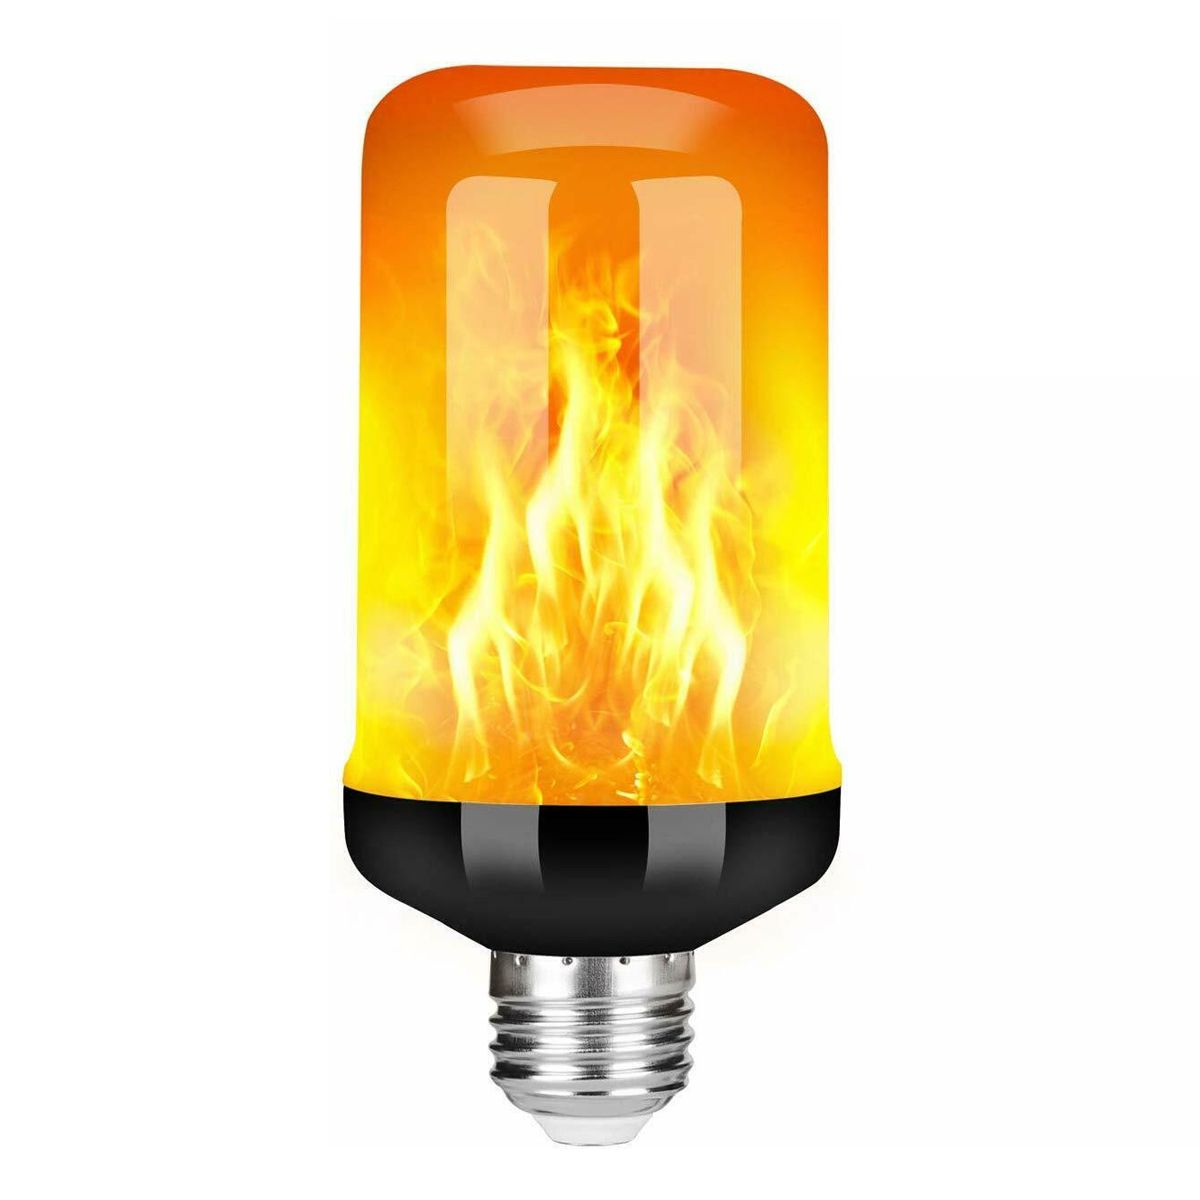 E27-B22-5W-LED-Flicker-Flame-Light-Bulb-4-Modes-Burning-Fire-Effect-Gravity-Sensor-Lamp-AC85-265V-1691896